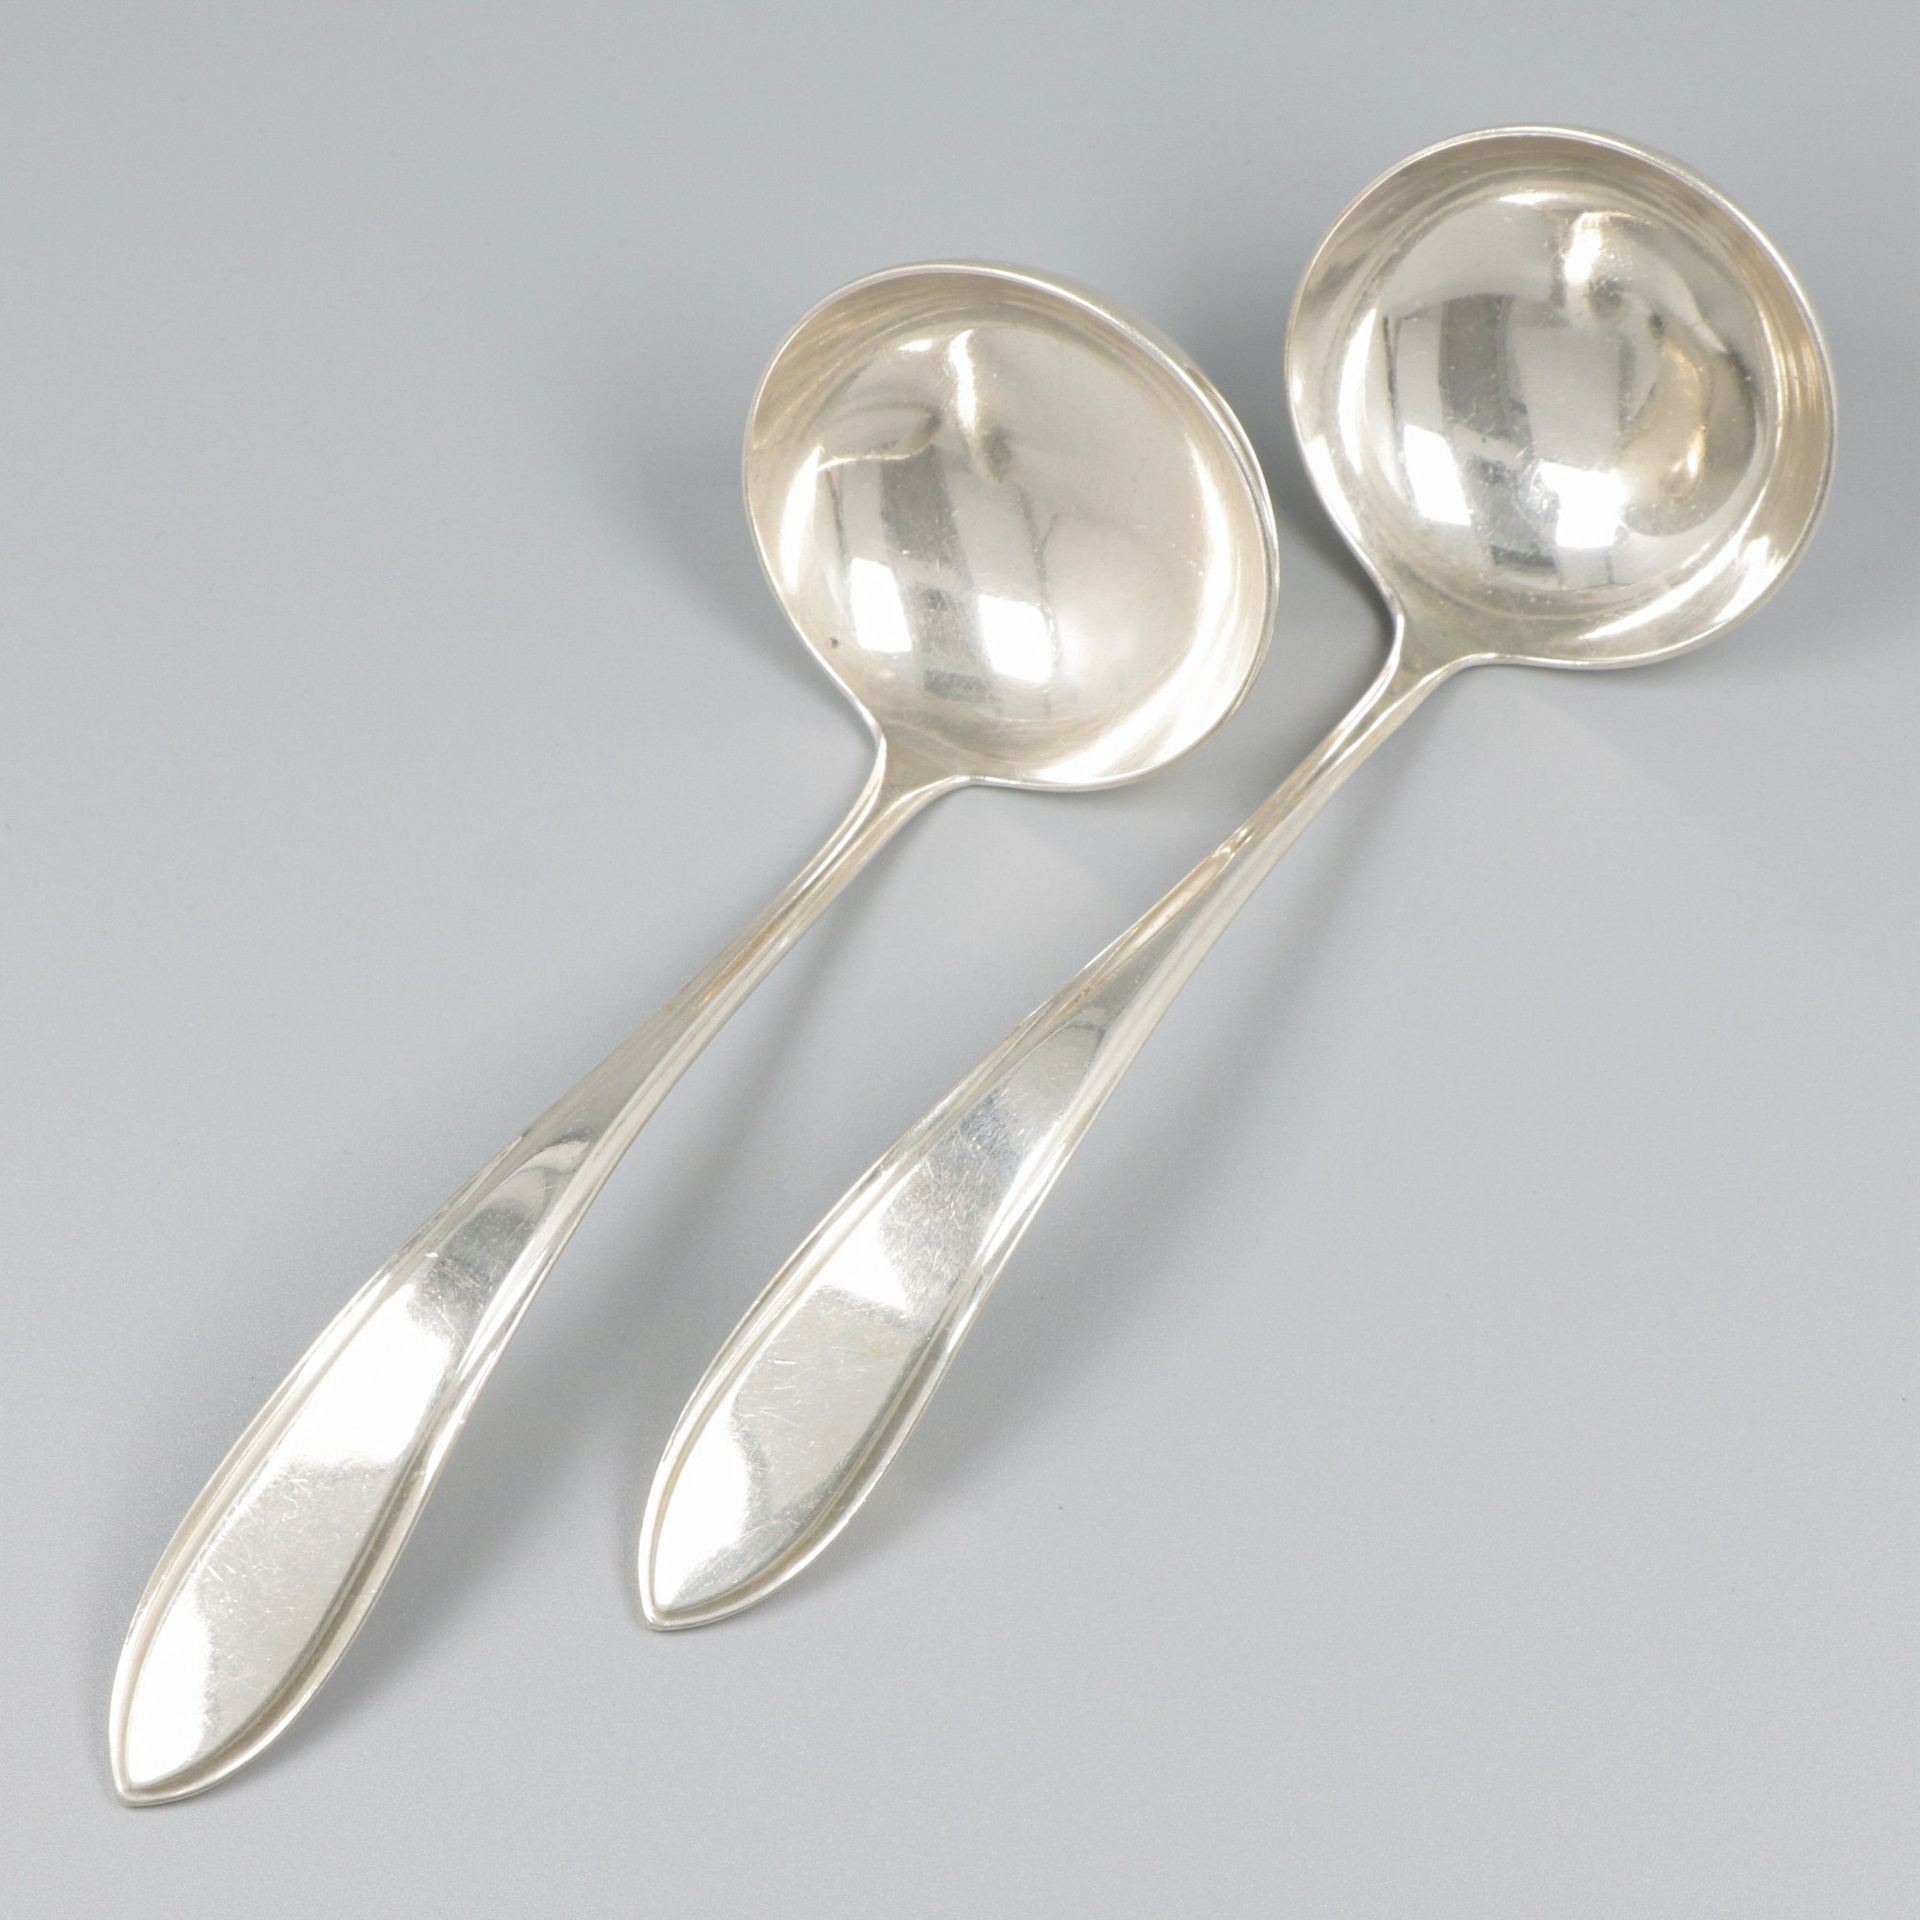 2-piece set of sauce spoons "Hollands Puntfilet" silver. "Hollands Puntfilet". P&hellip;